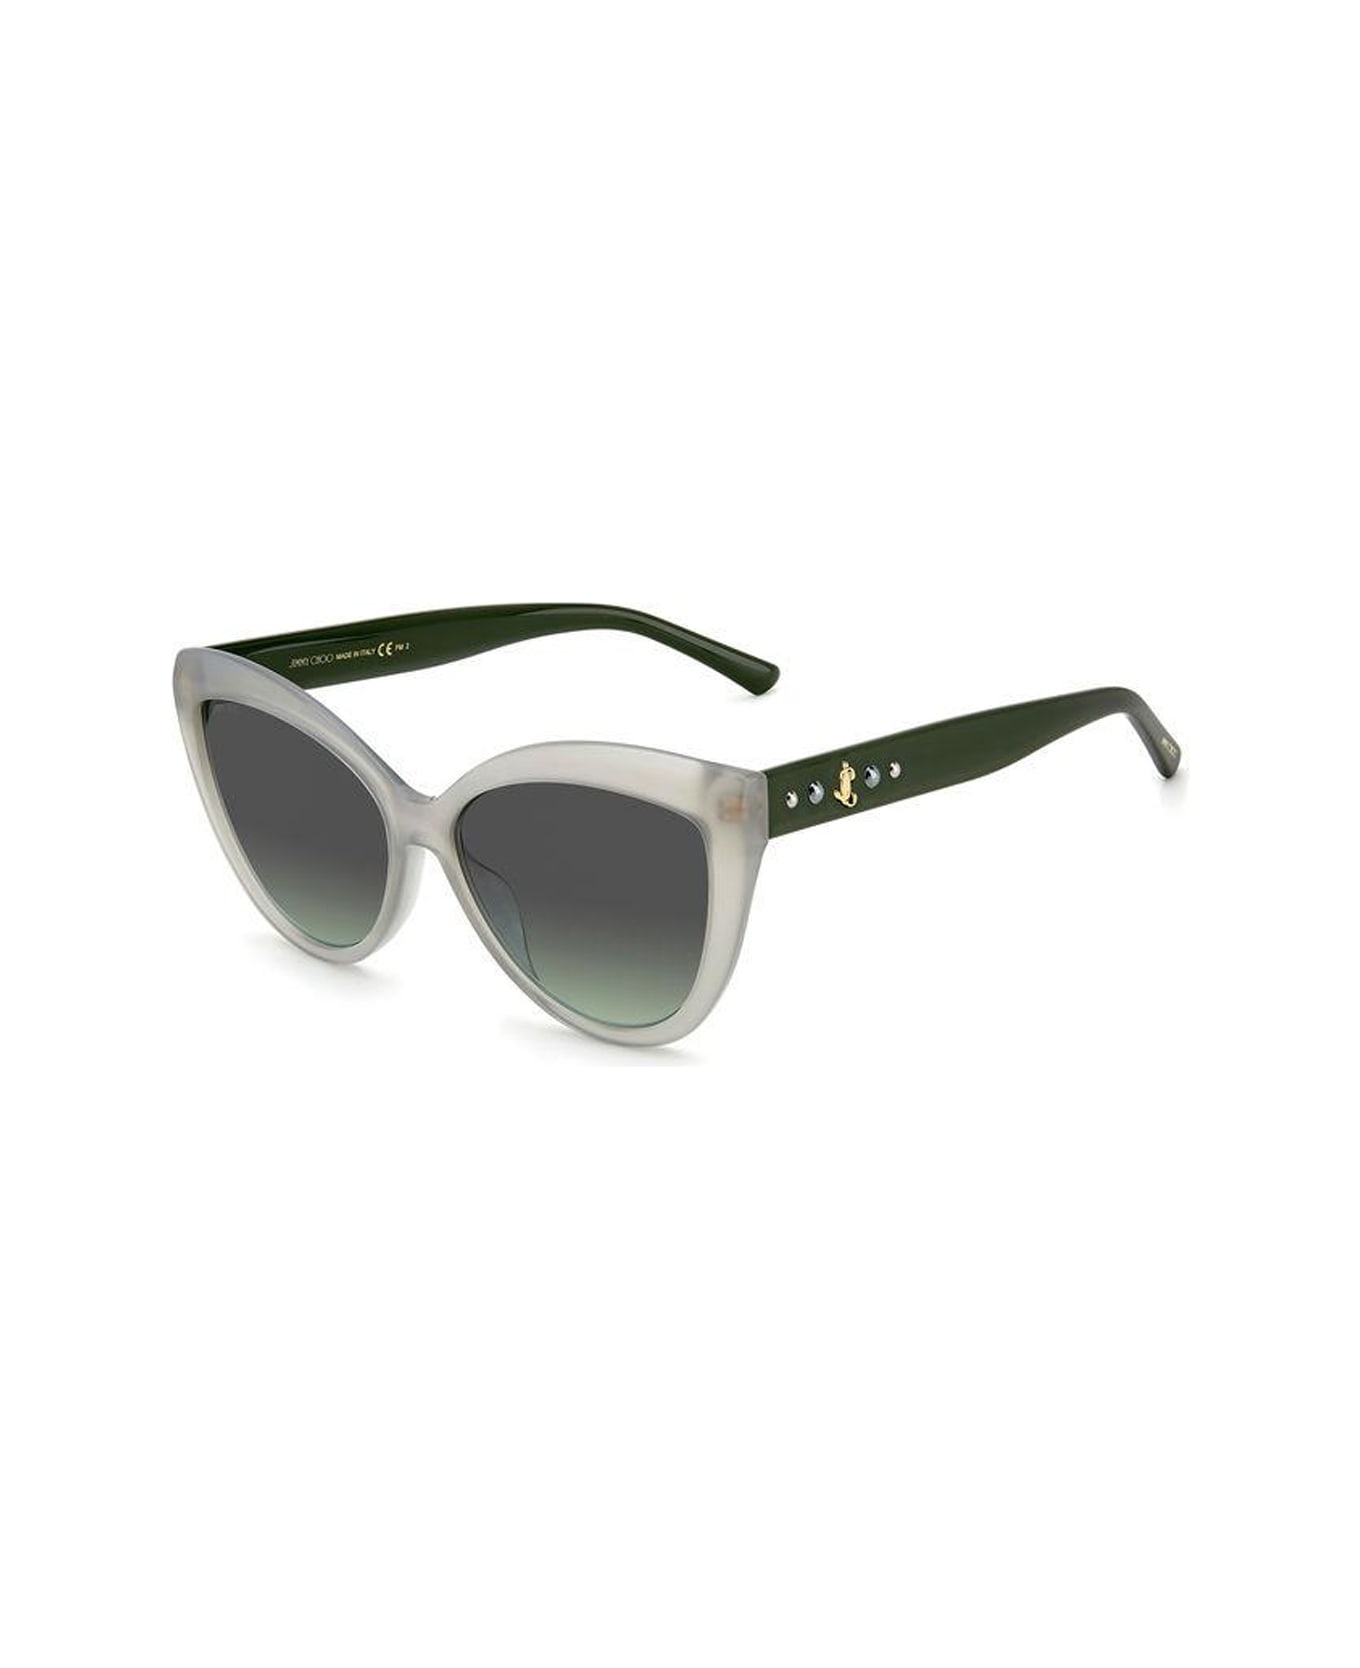 Jimmy Choo Eyewear Sinnie/g/s tinted Sunglasses - Verde